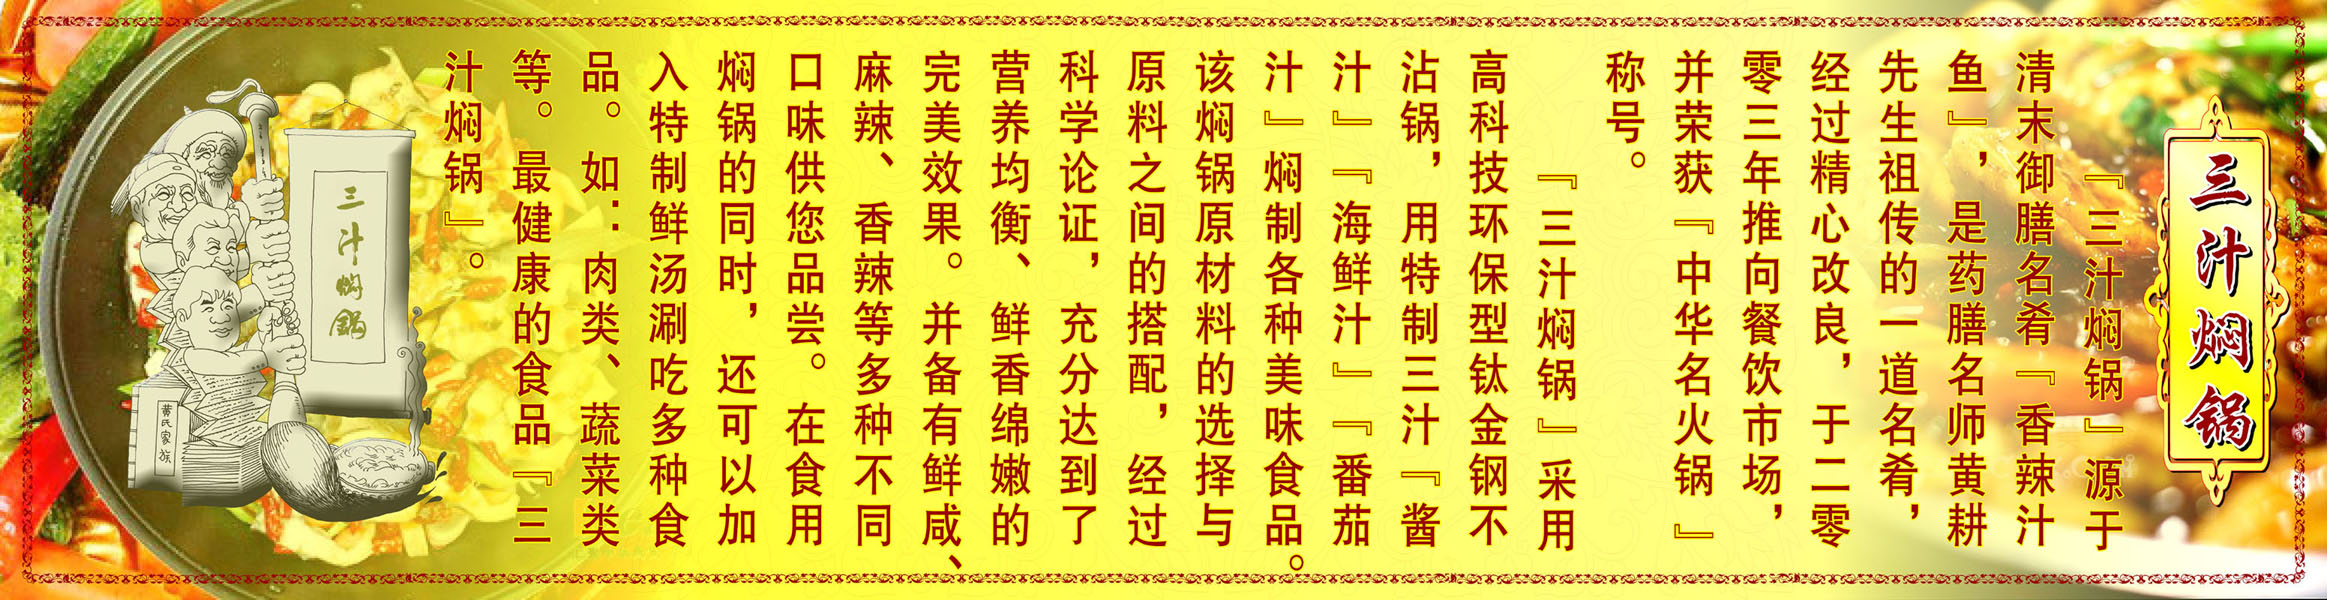 580海报印制海报展板素材7三汁焖锅文化知识简介绍